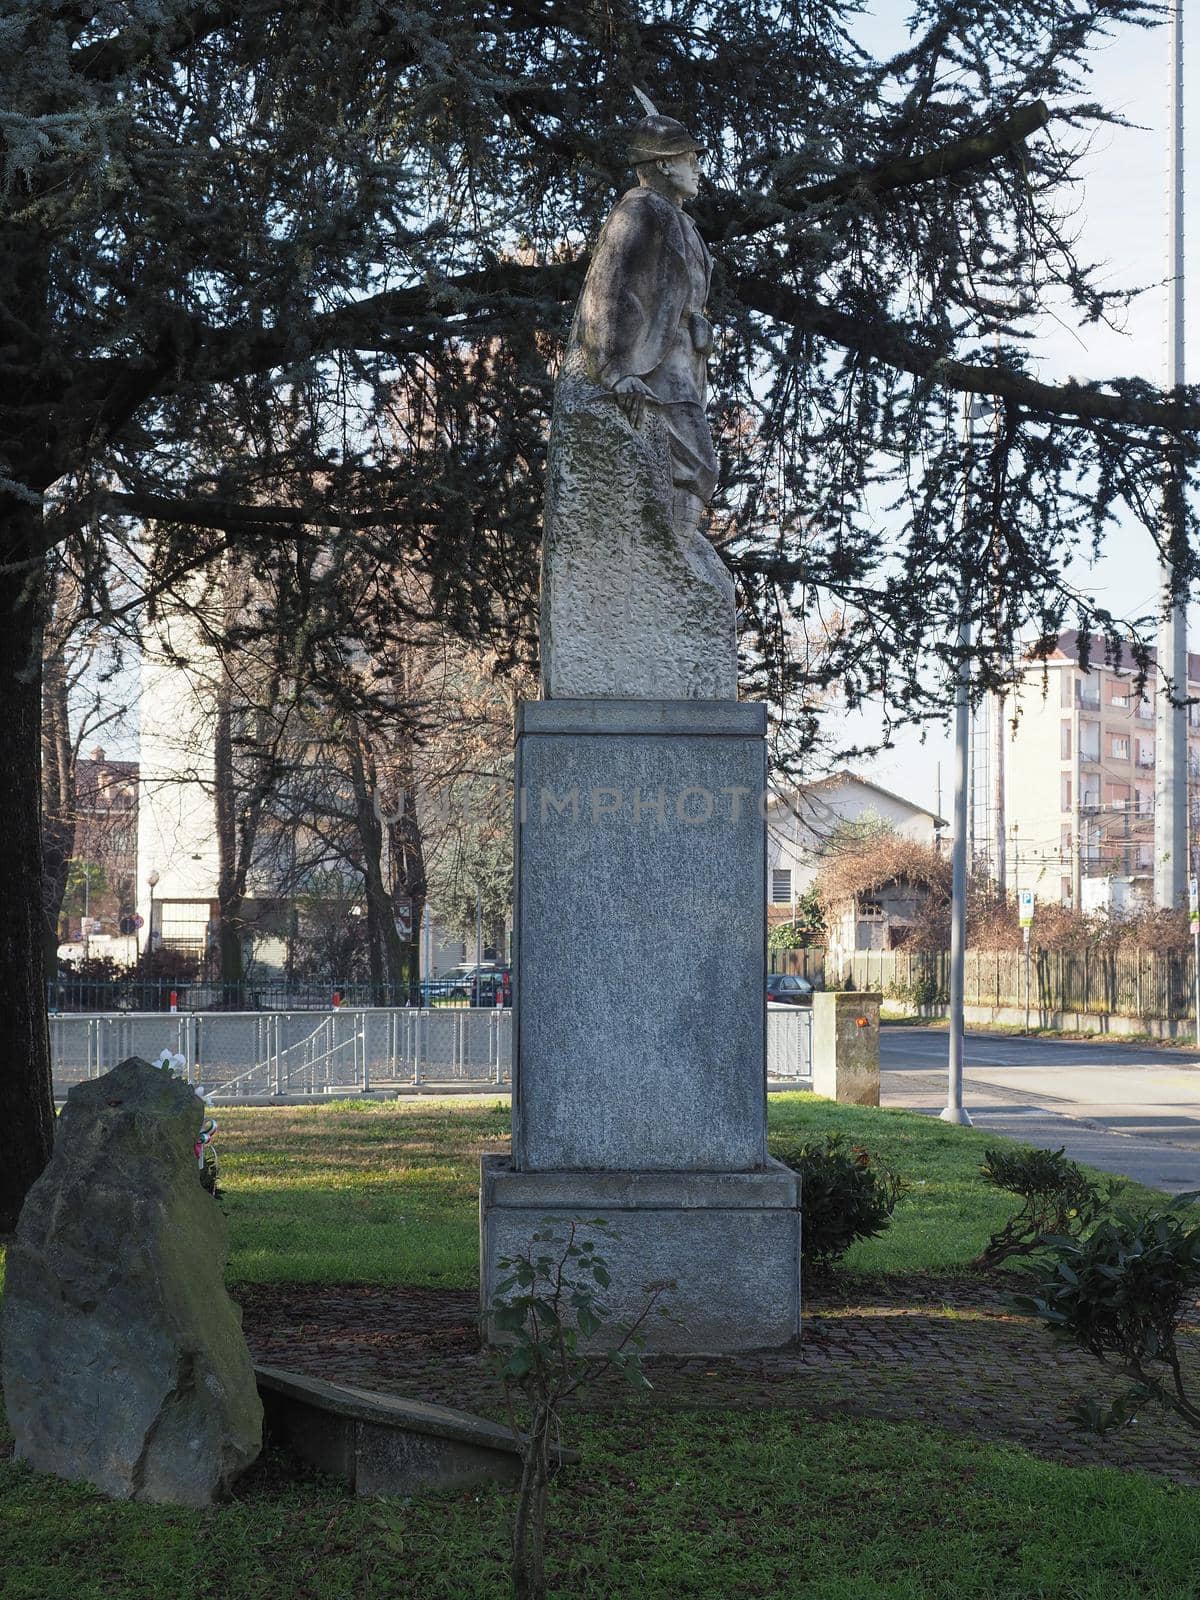 Alpini monument in Settimo Torinese by claudiodivizia